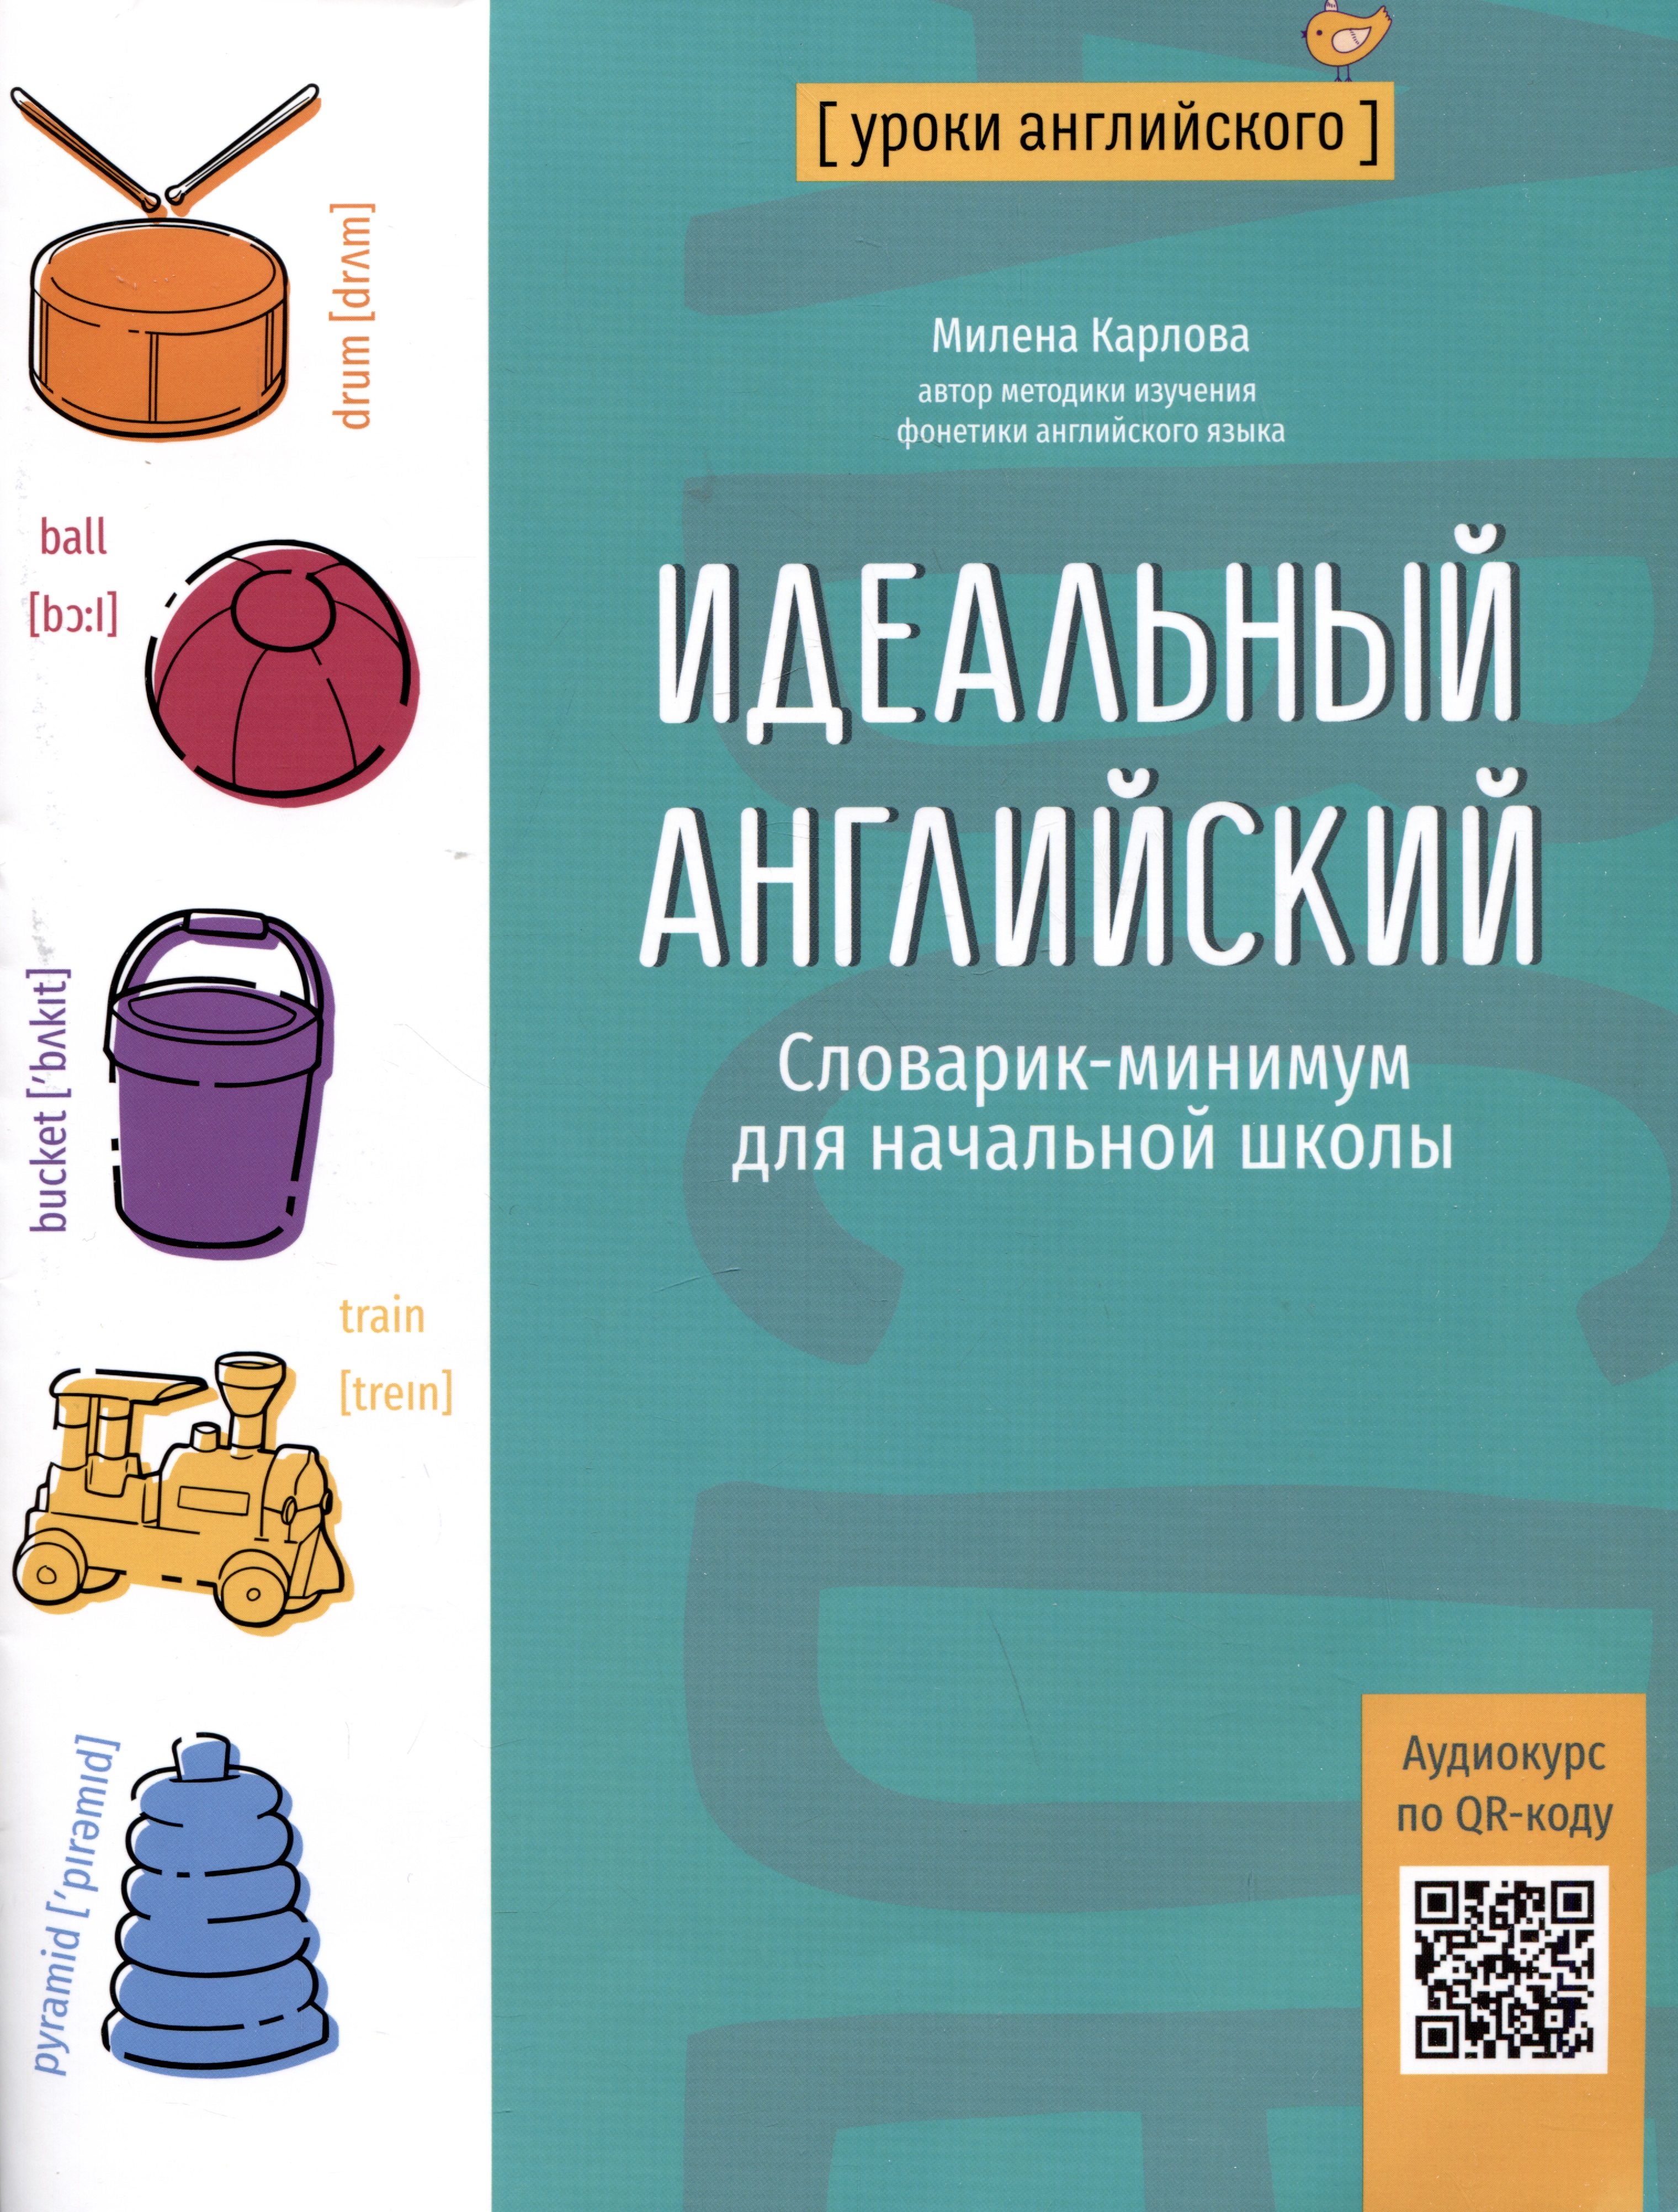 Идеальный английский: словарик-минимум для начальной школы русско английский словарик в картинках для начальной школы шалаева г п